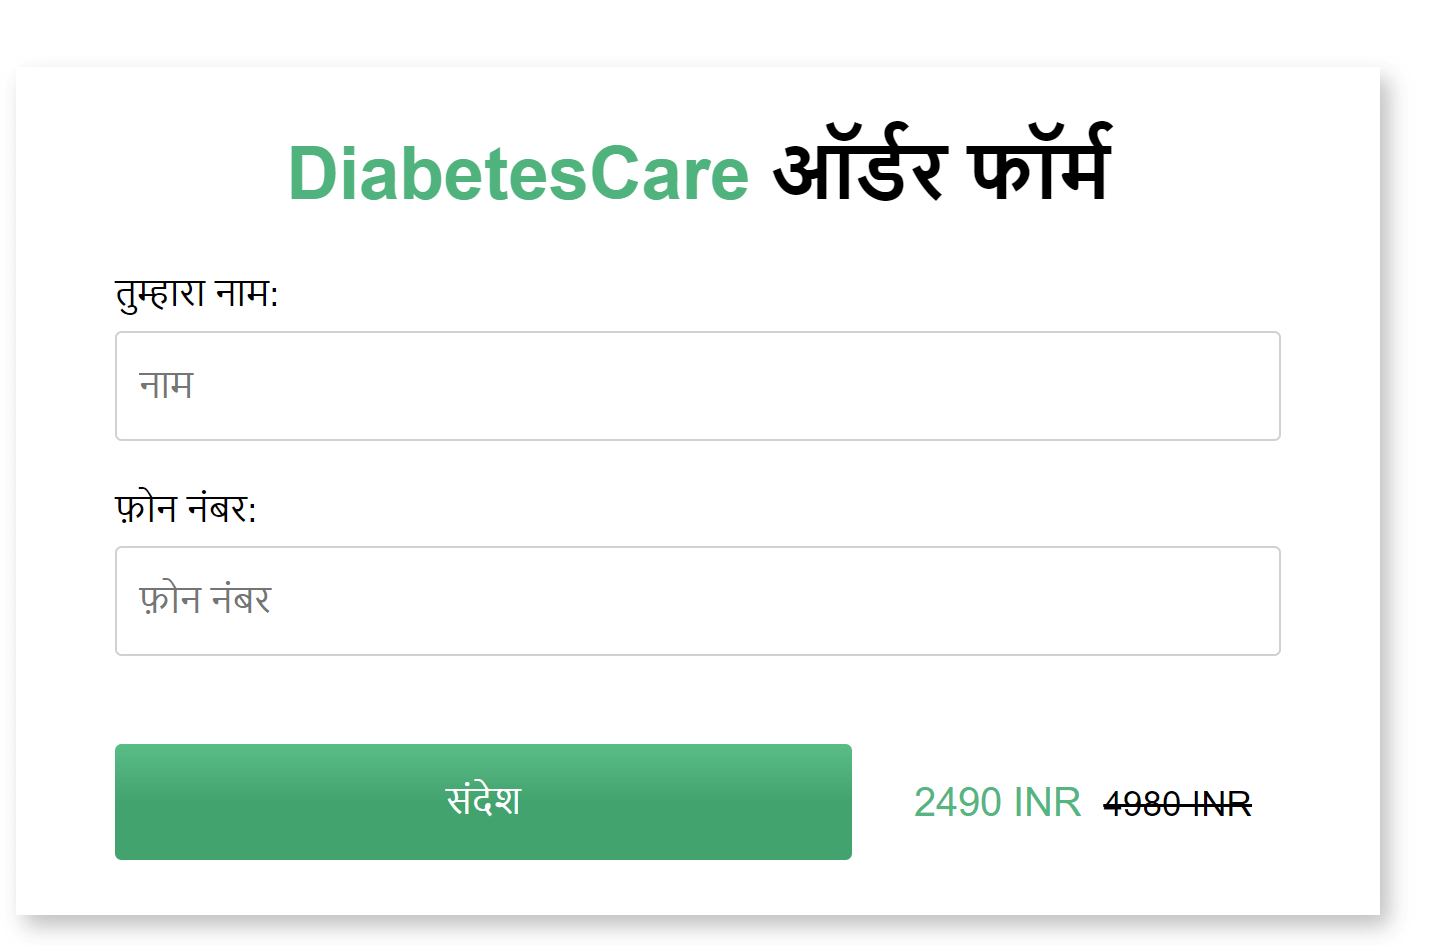 DiabetesCare order